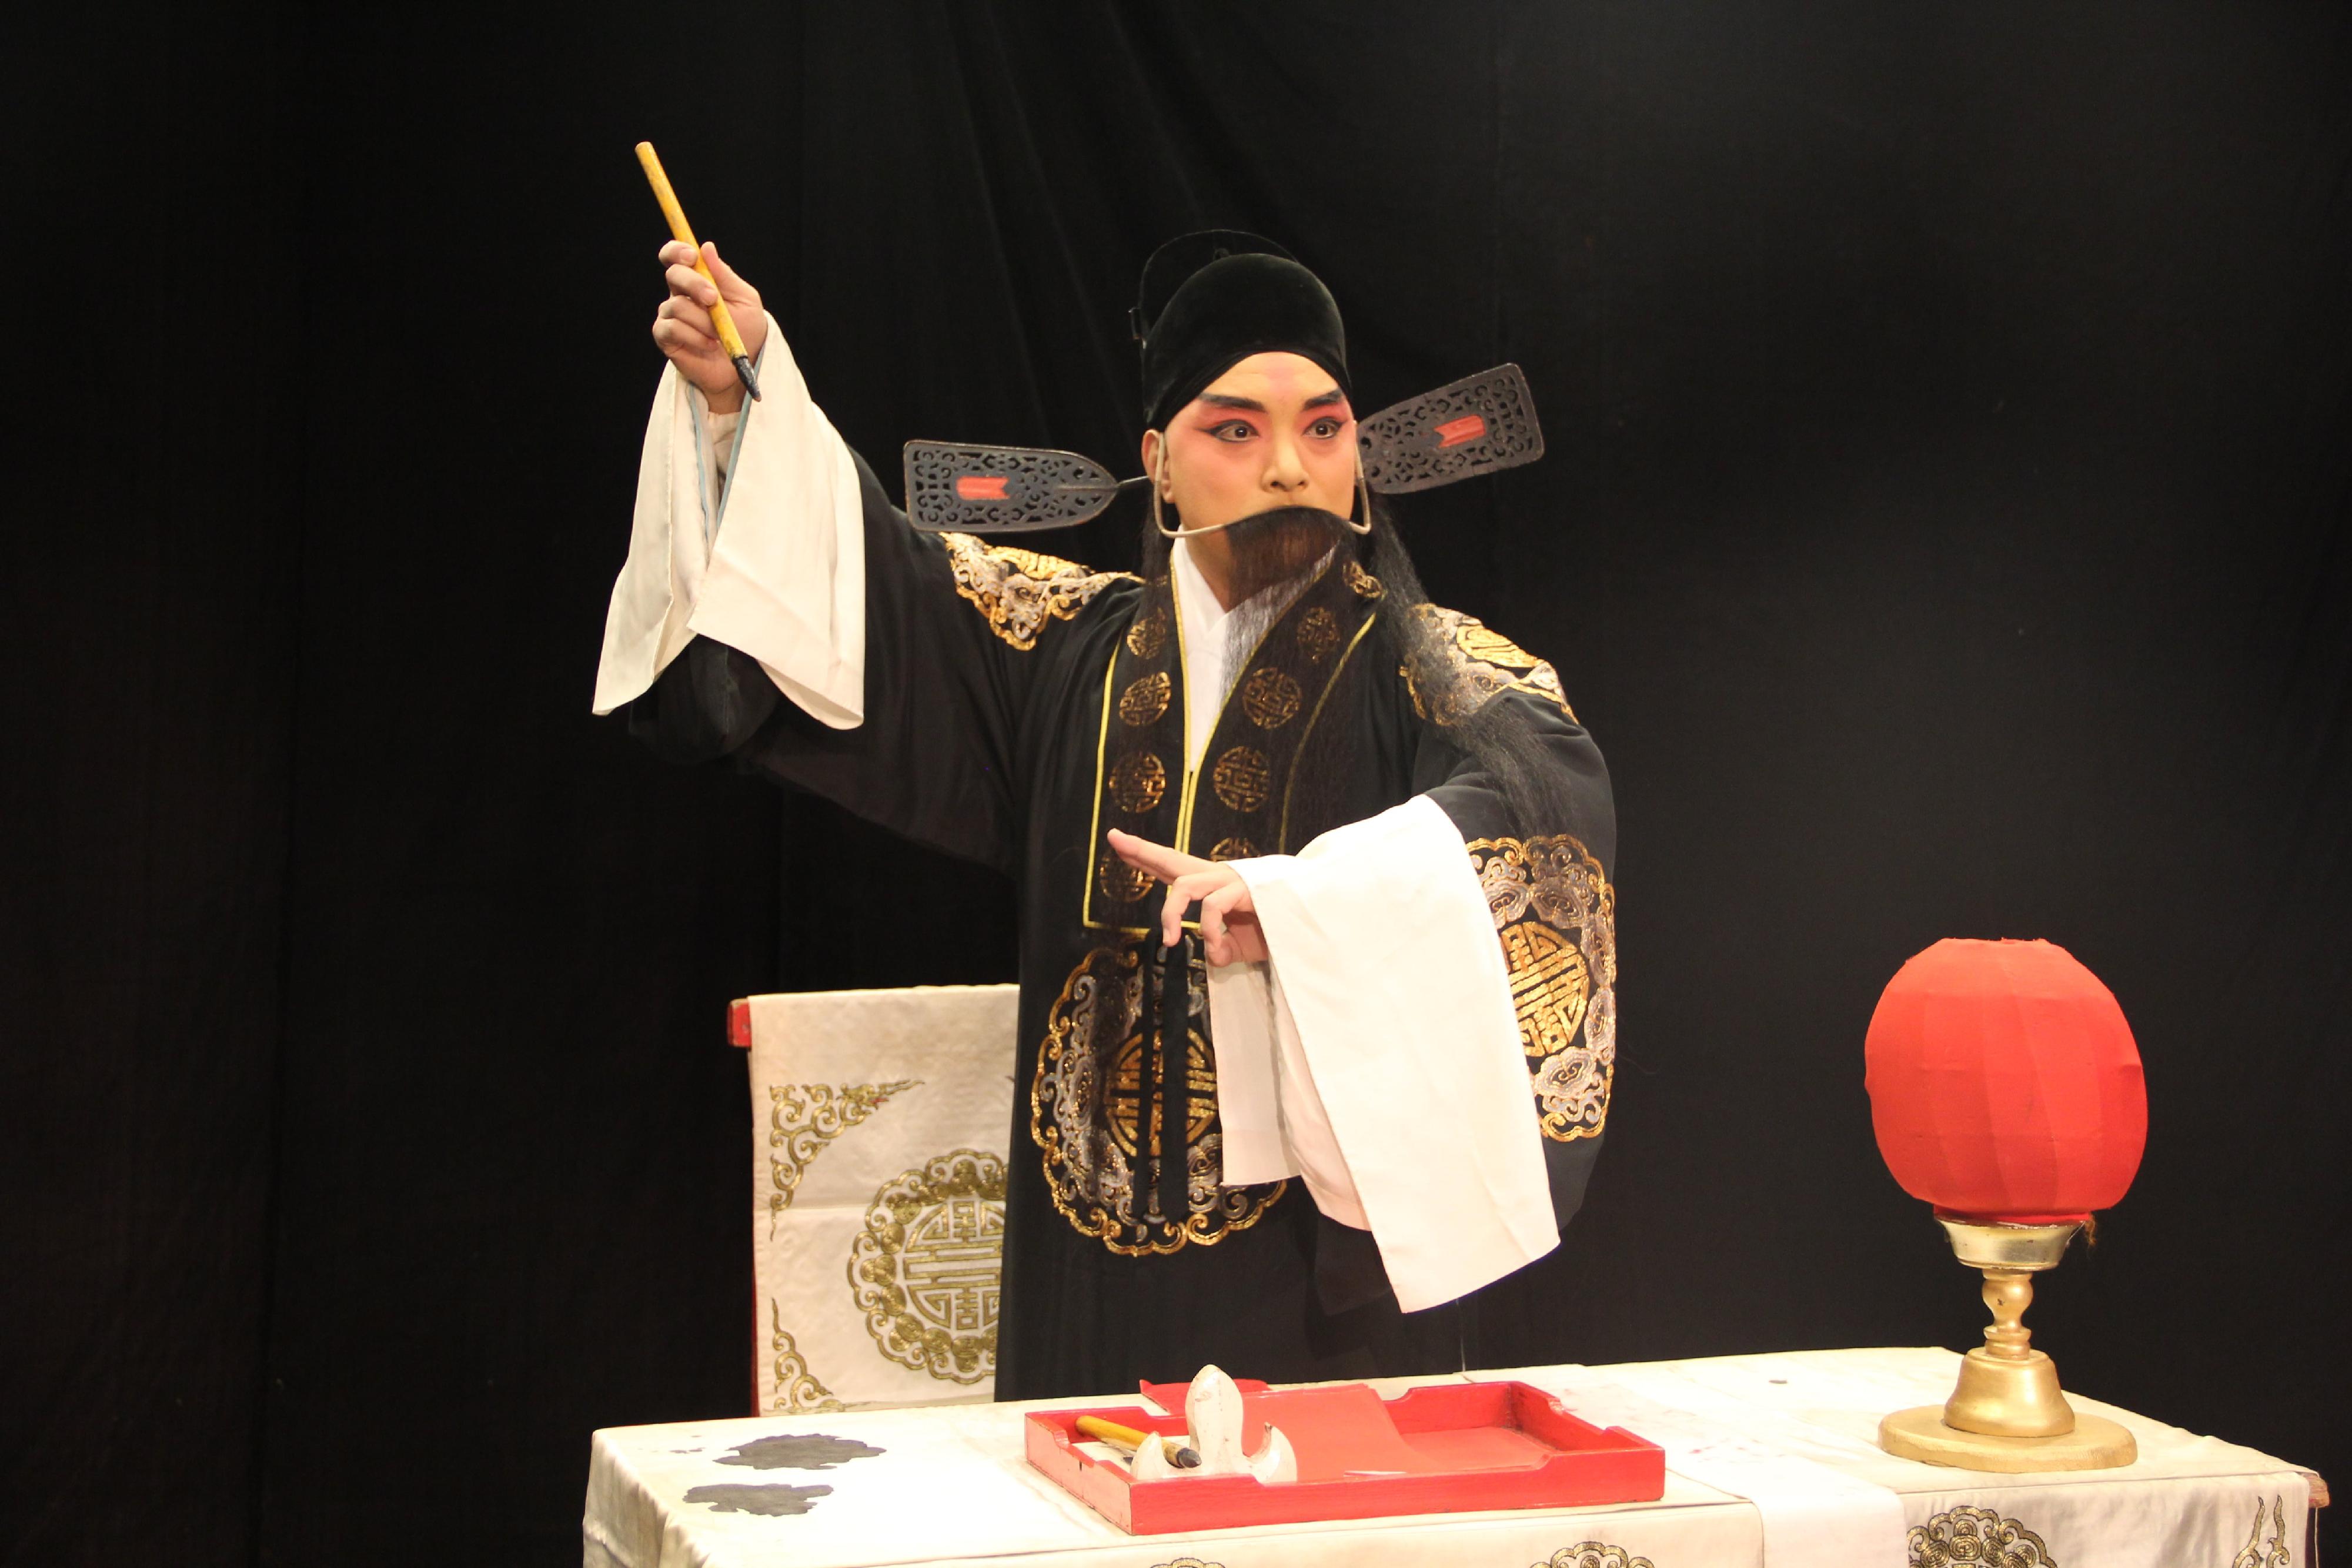 首届中华文化节七月上演两场经典山东柳子大戏。图示《孙安动本》剧照。
